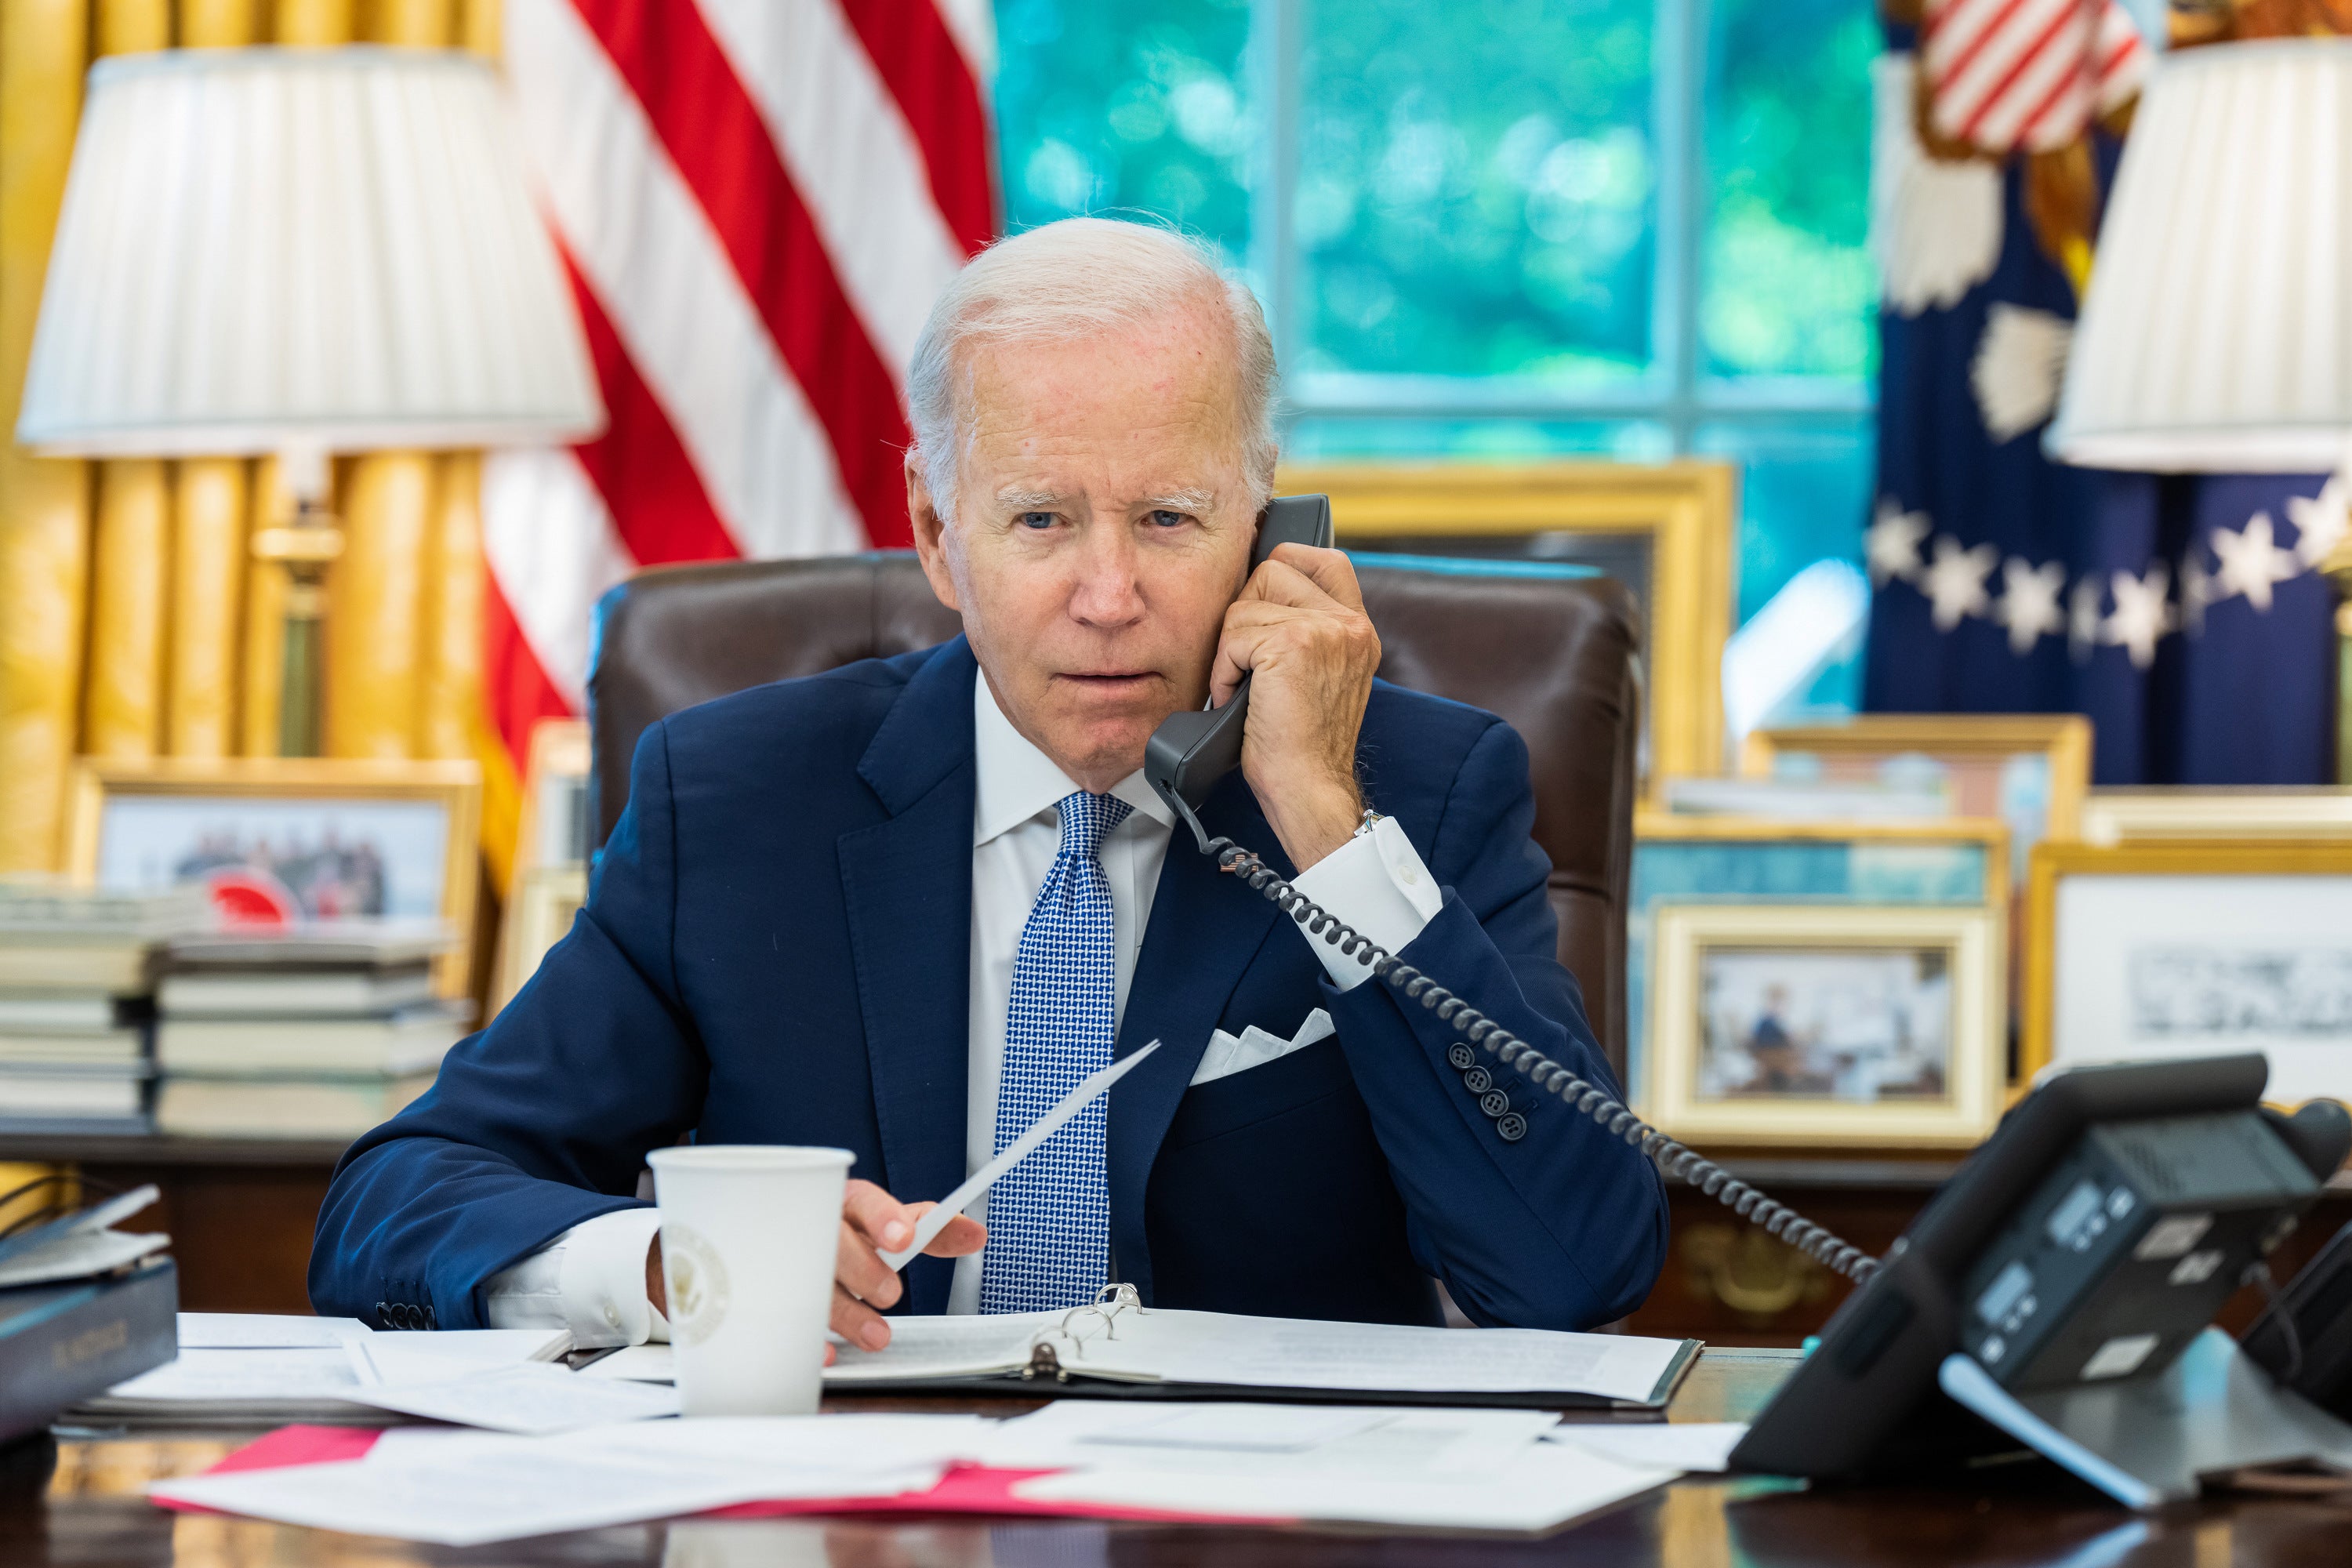 El presidente de EE.UU., Joe Biden, habla durante una llamada telefónica en el Despacho Oval con el líder chino Xi Jinping